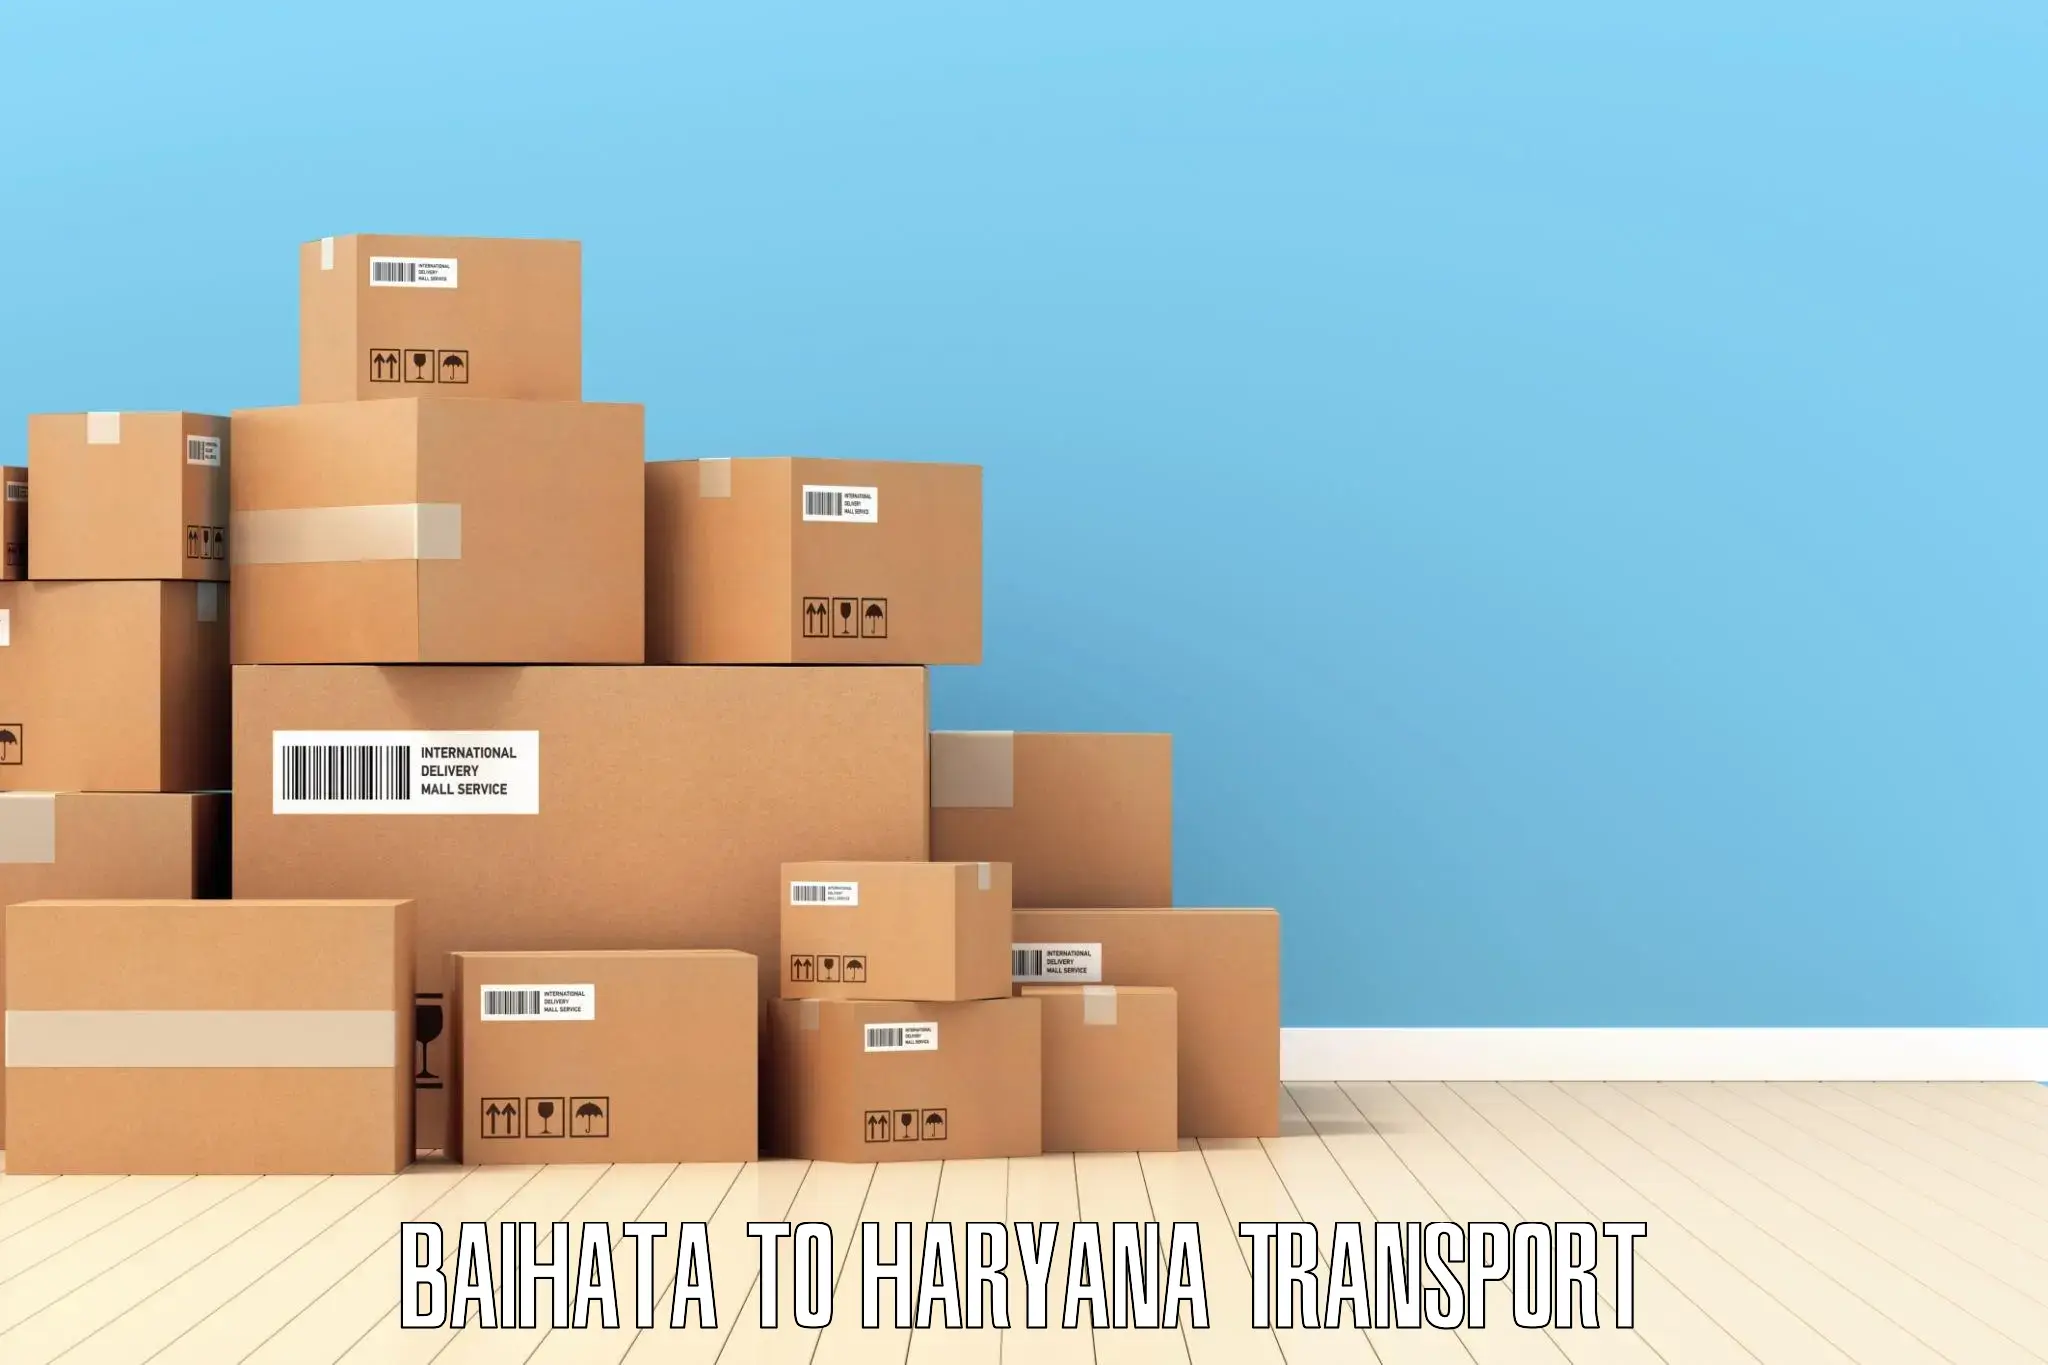 Online transport service Baihata to IIIT Sonepat